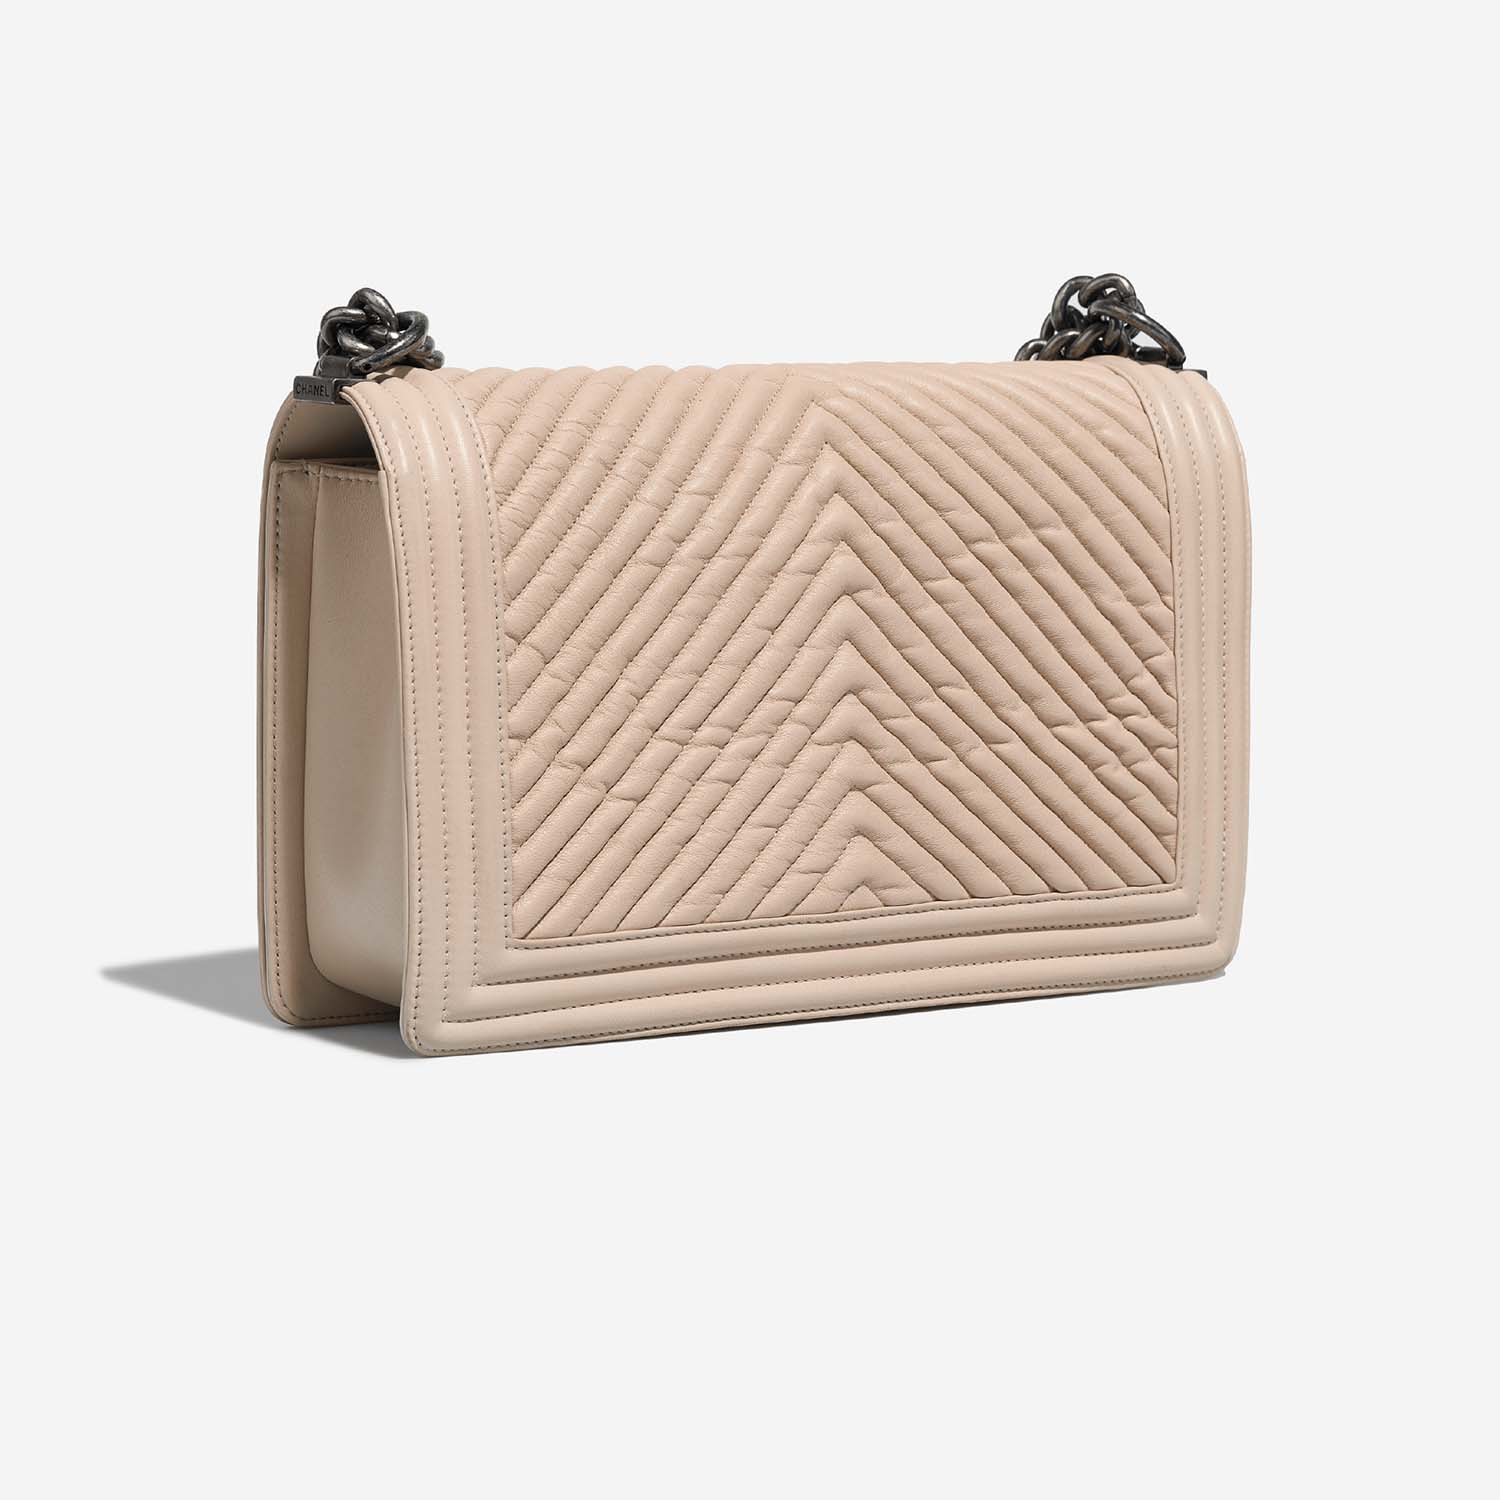 Chanel Boy NewMedium Beige Side Back | Sell your designer bag on Saclab.com